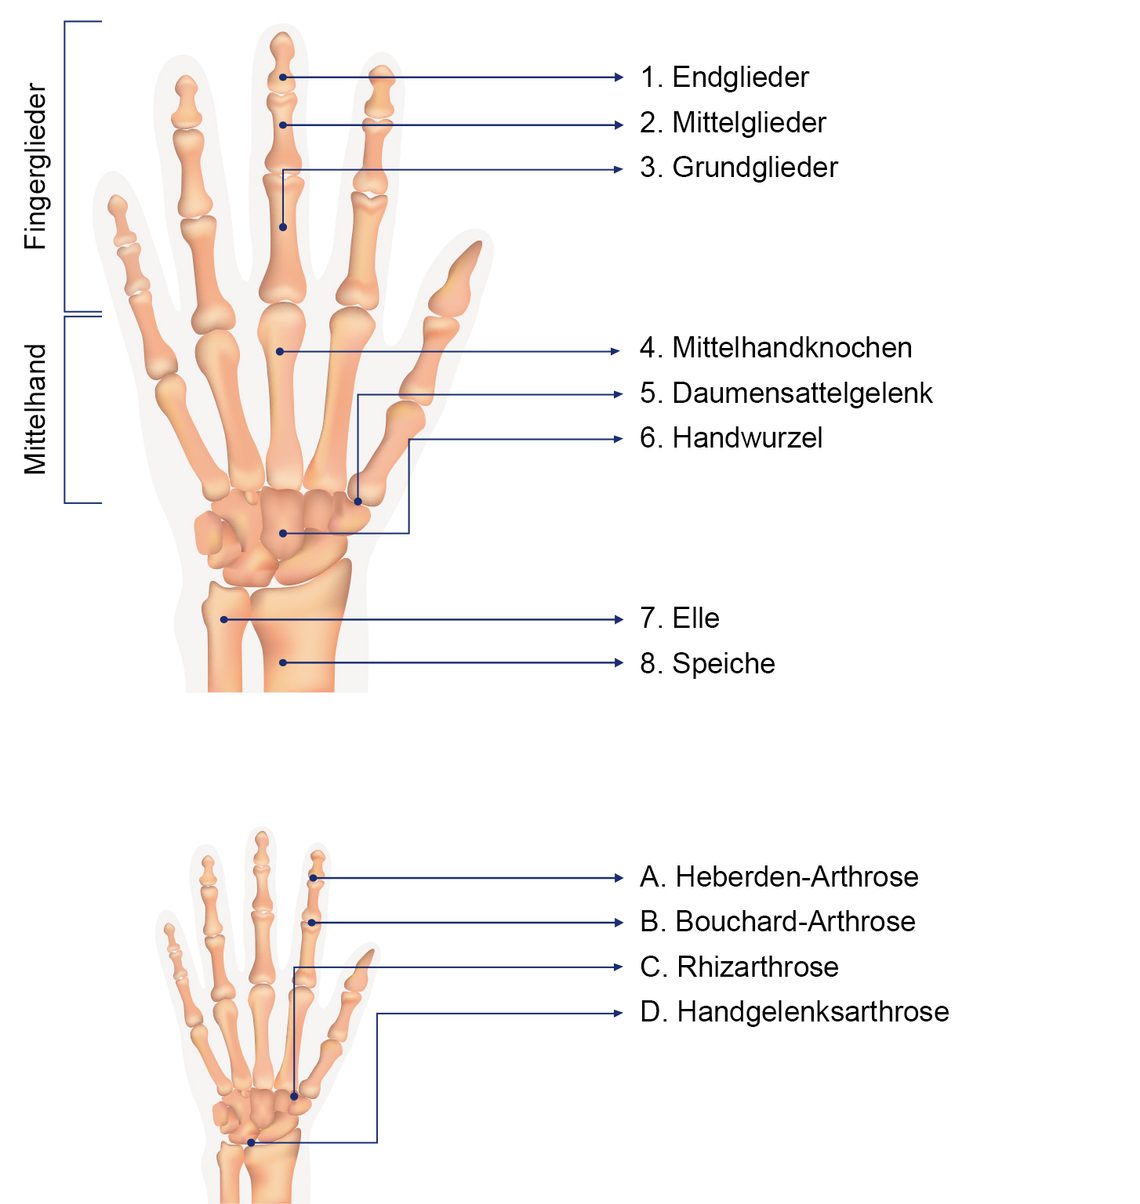 Hintergrundwissen: Aufbau und Funktion der Hand- und Fingergelenke.